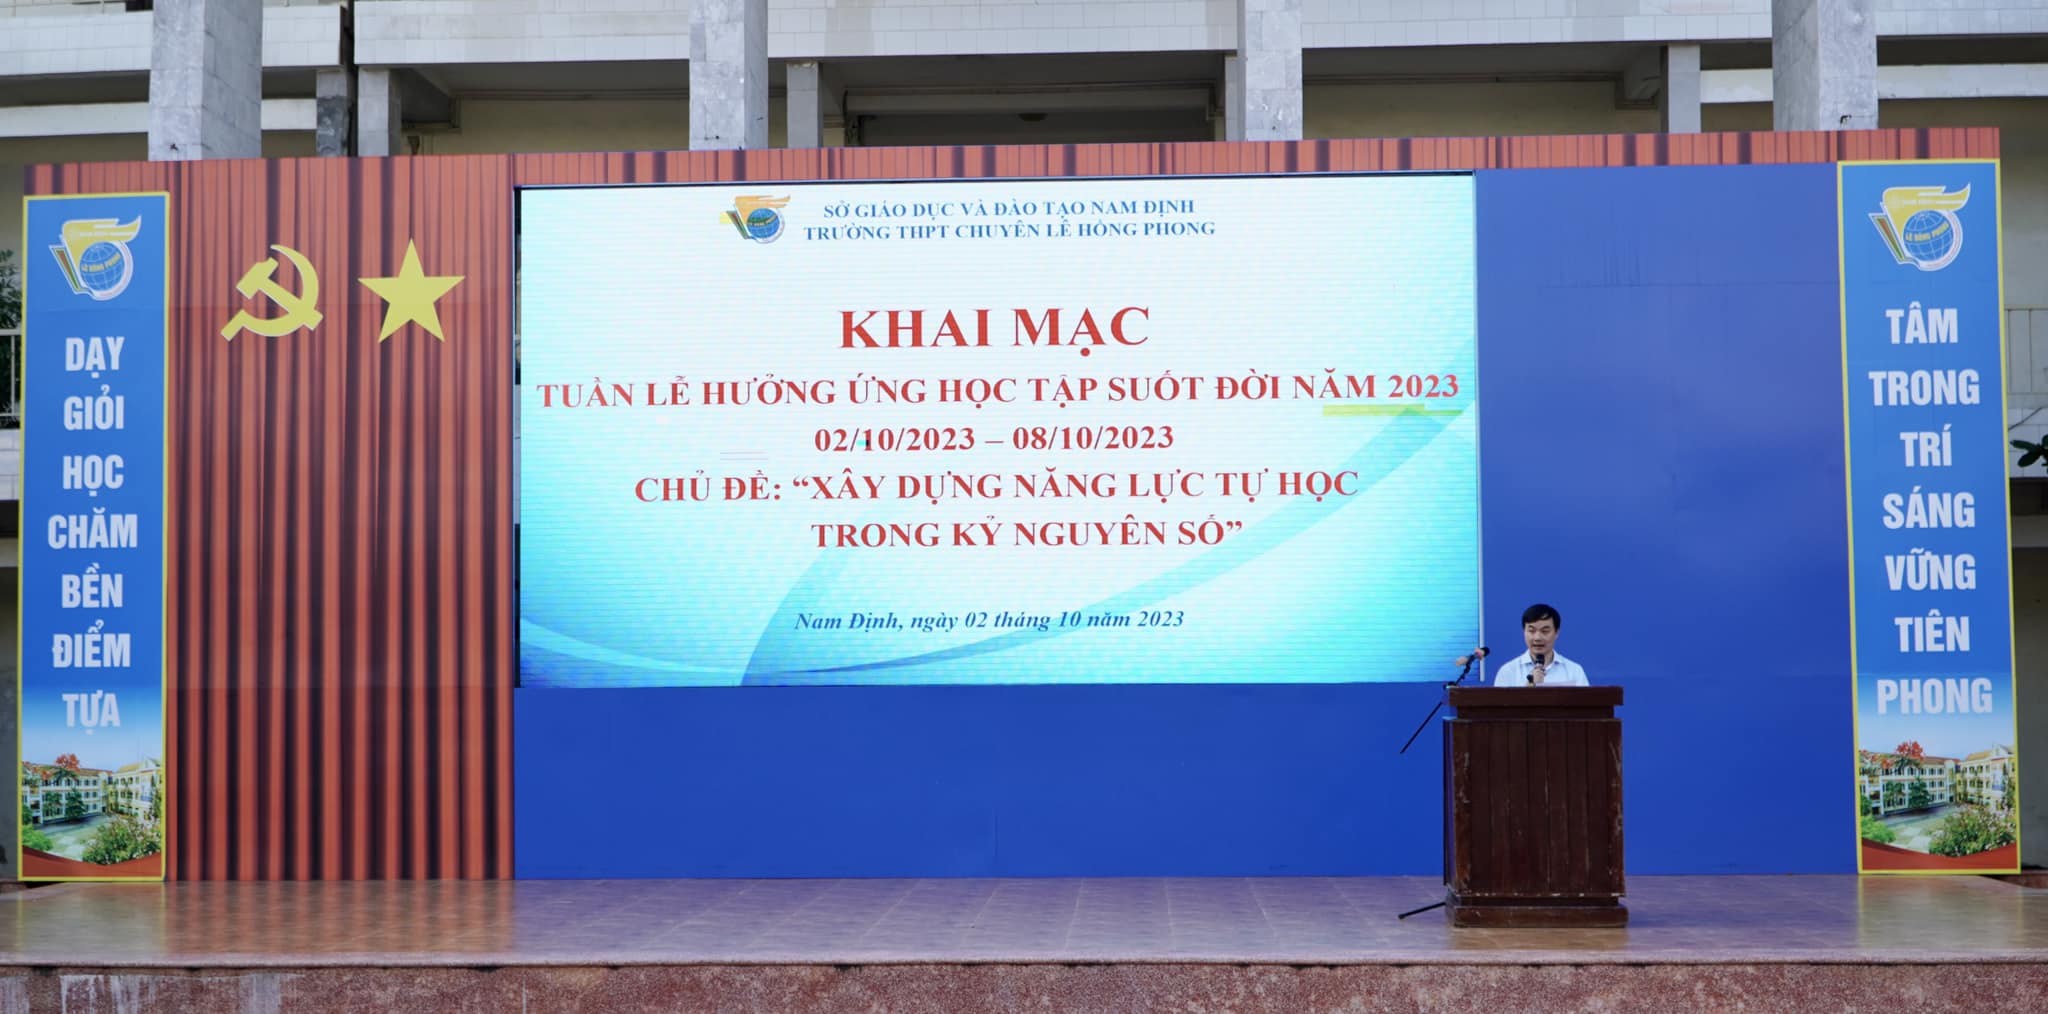 Trường THPT chuyên Lê Hồng Phong phát động, khai mạc “Tuần lễ hưởng ứng học tập suốt đời”